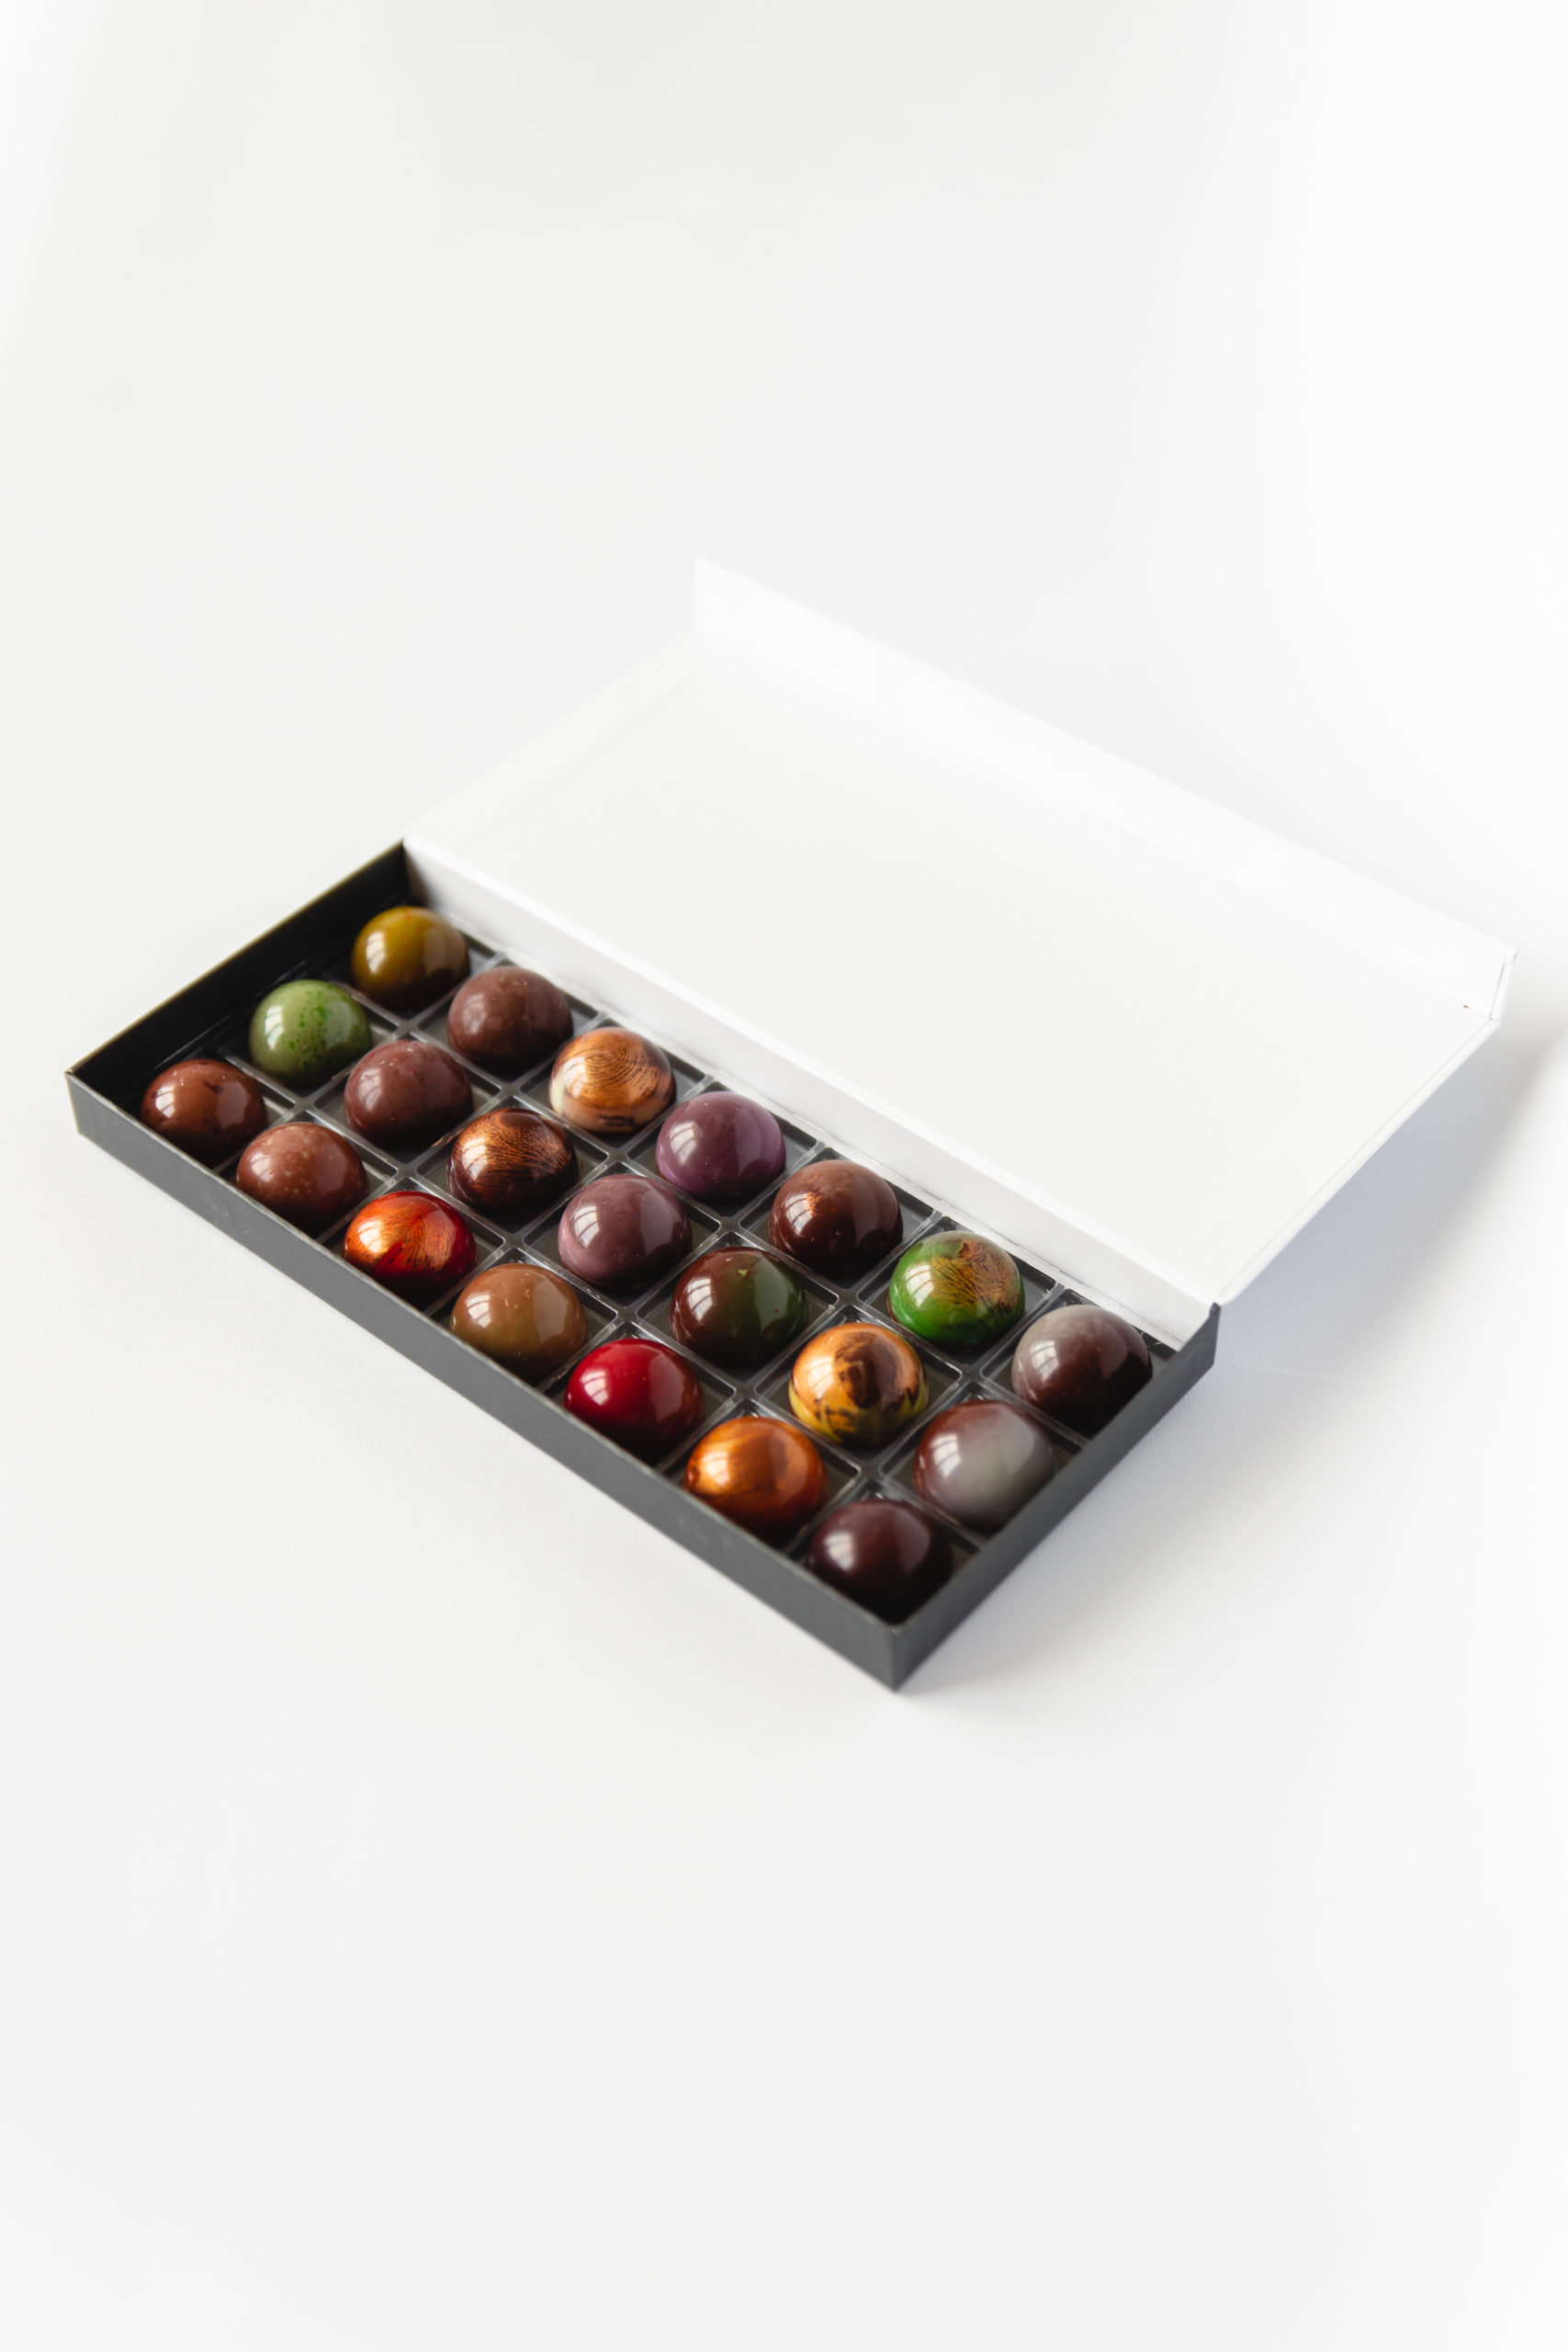 CHOCOLATS LOUIS - Coffret chocolat 21 Pralinés - Chocolat Noir et Lait -  Chocolat a offrir - Coffret cadeau - Fabrication Française Artisanale -  100% Beurre de Cacao : : Epicerie